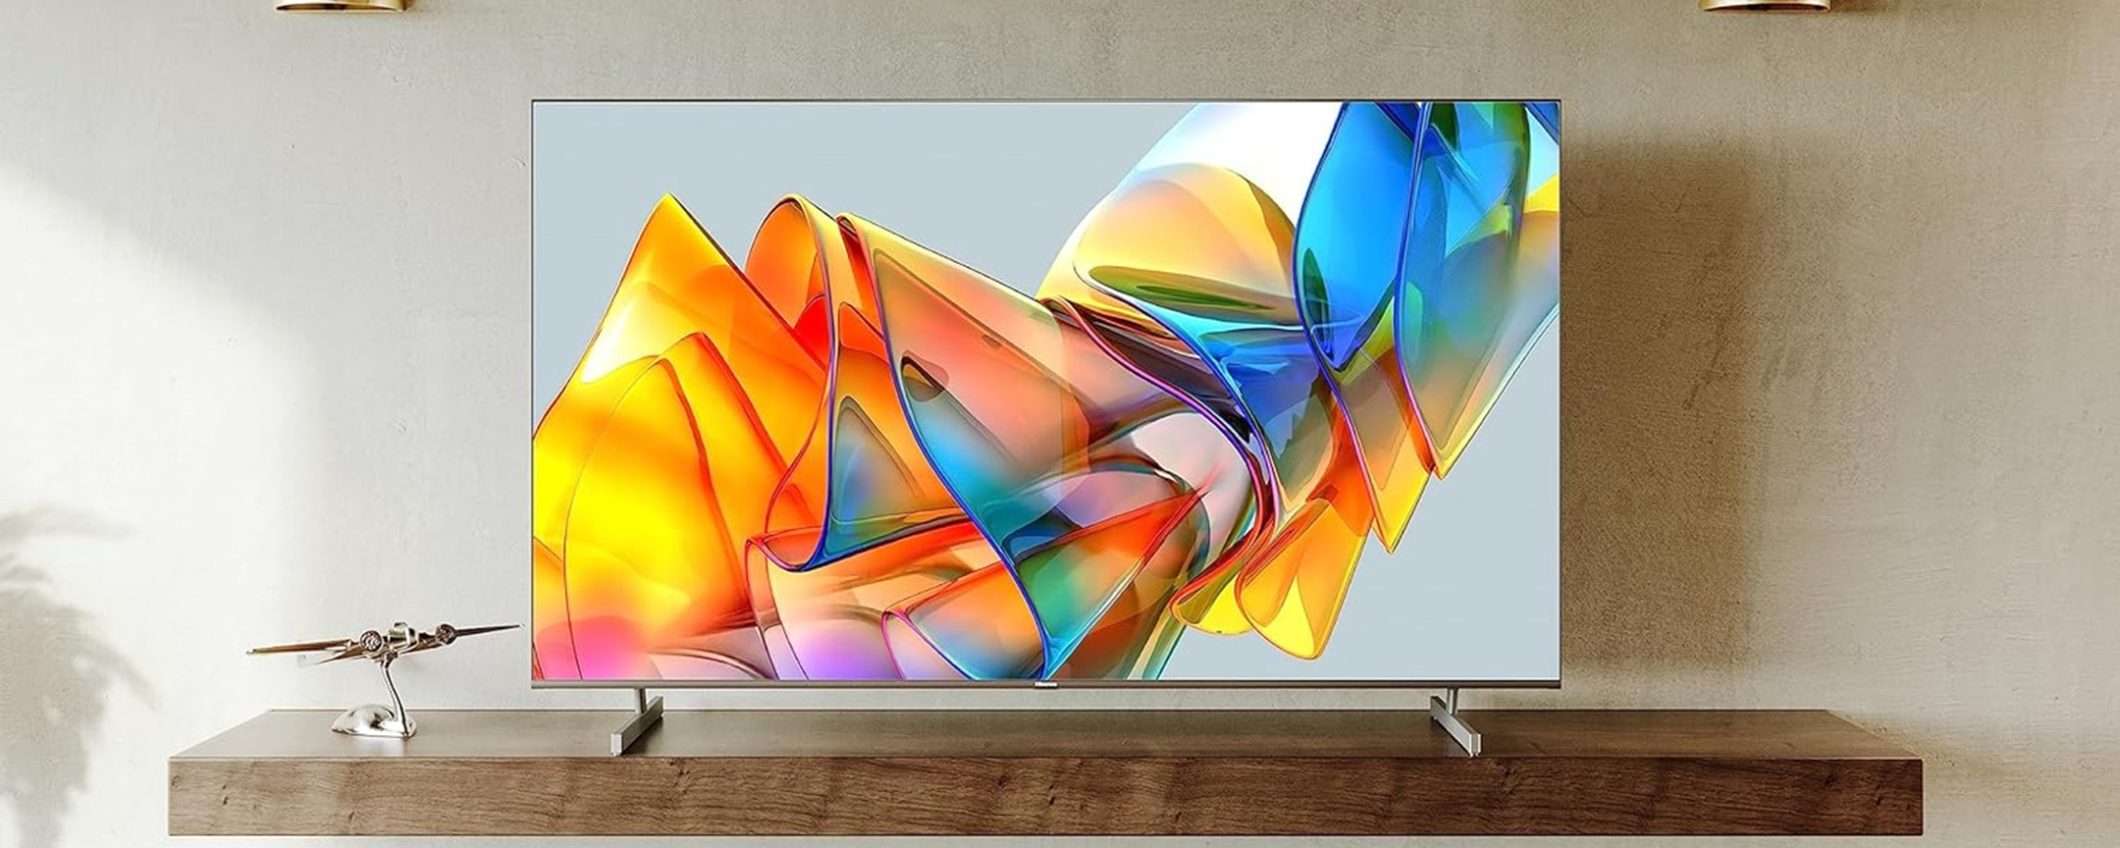 Smart TV Hisense ULED Mini-LED 4K da 55 scontata di ben 170€ su Amazon